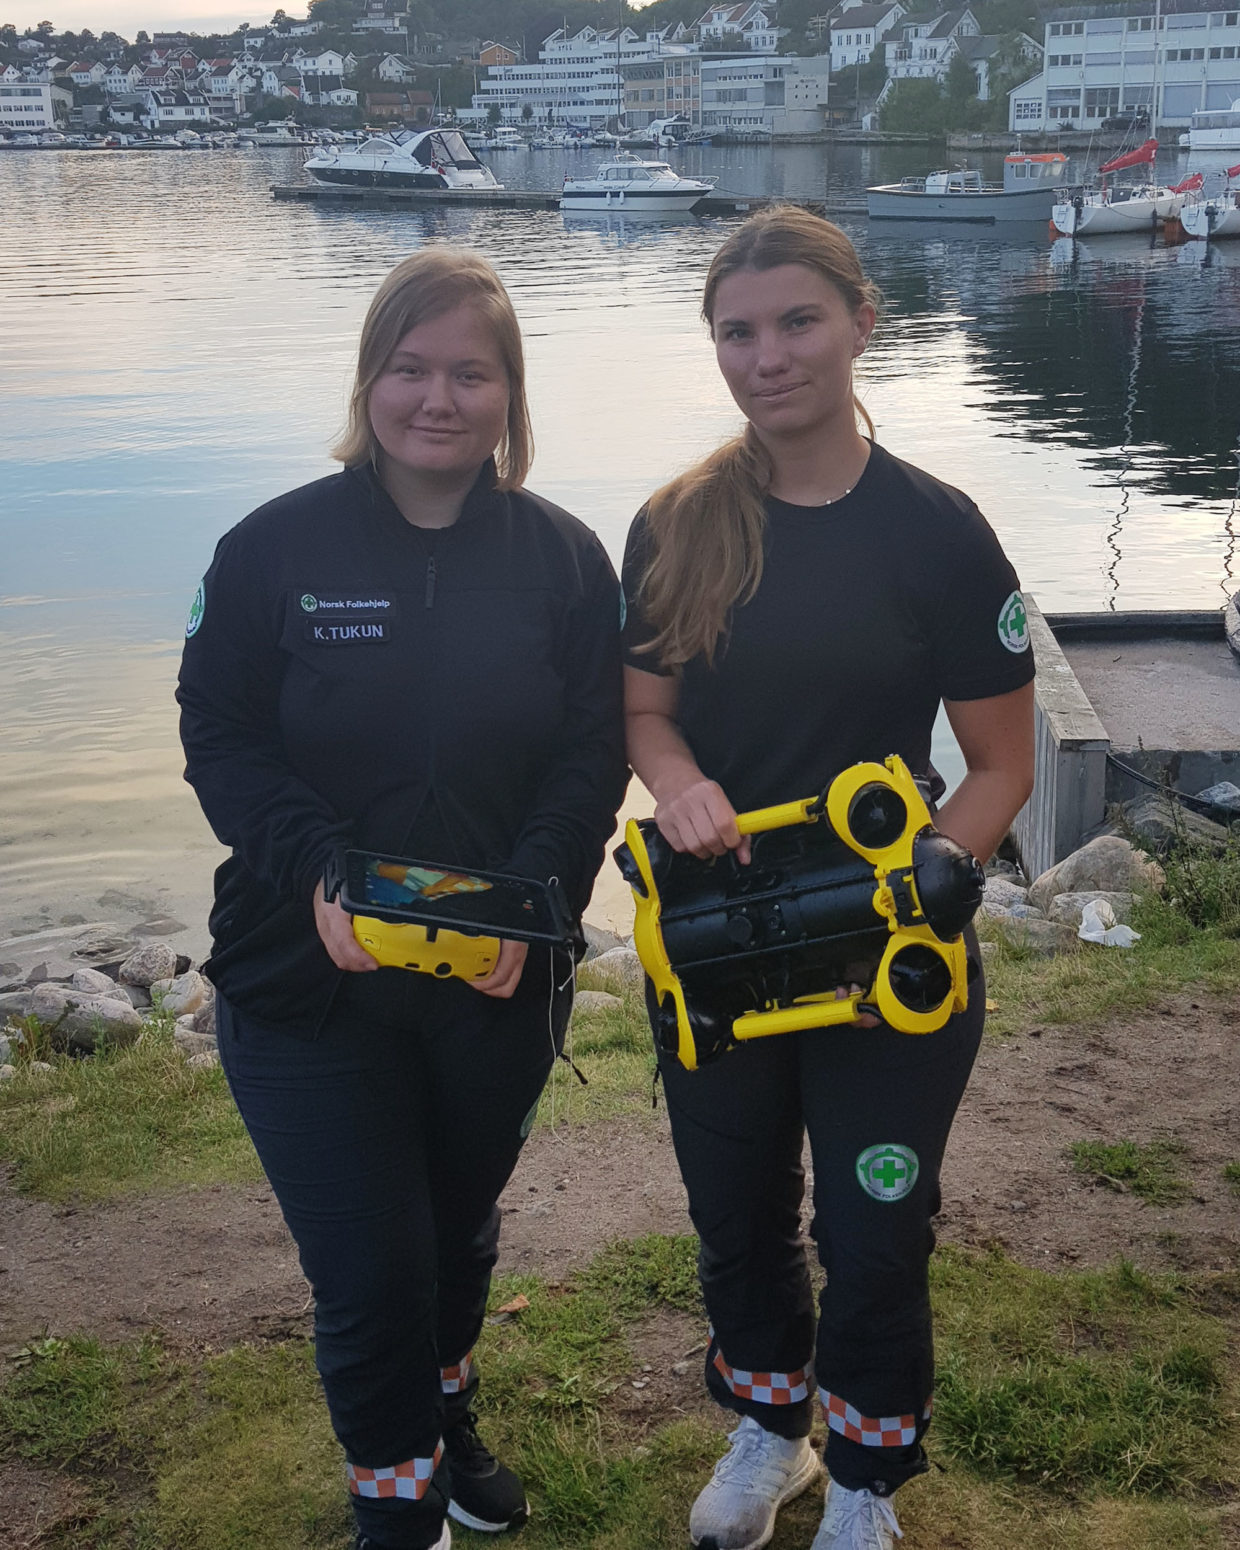 Anniken Kleven og Kristin Tukun er to av dronepilotene i Arendal. - Vi er begge interesserte i teknologi, så det var helt naturlig for oss å lære oss mer om bruk av drone i søk, sier de.